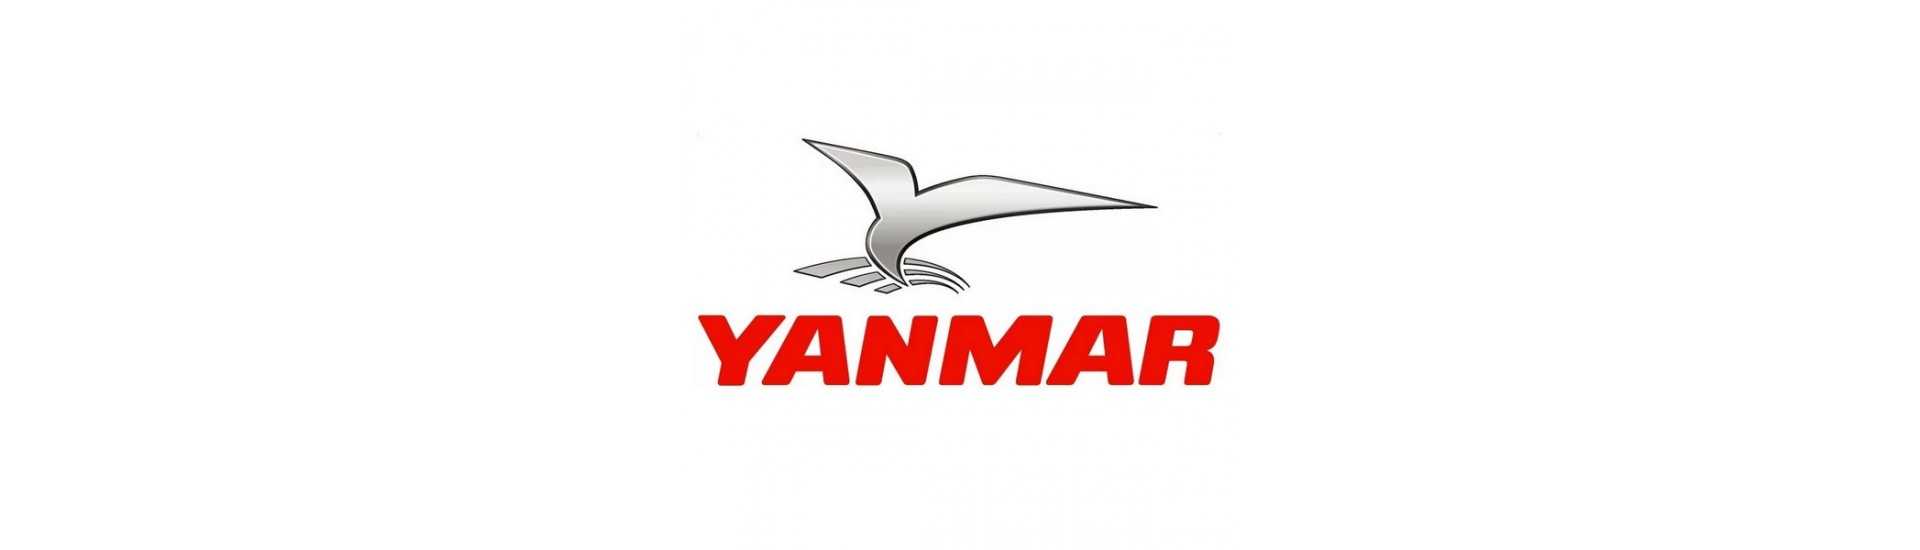 Filtri benzina Yanmar au meilleur prix pour voiture sans permis